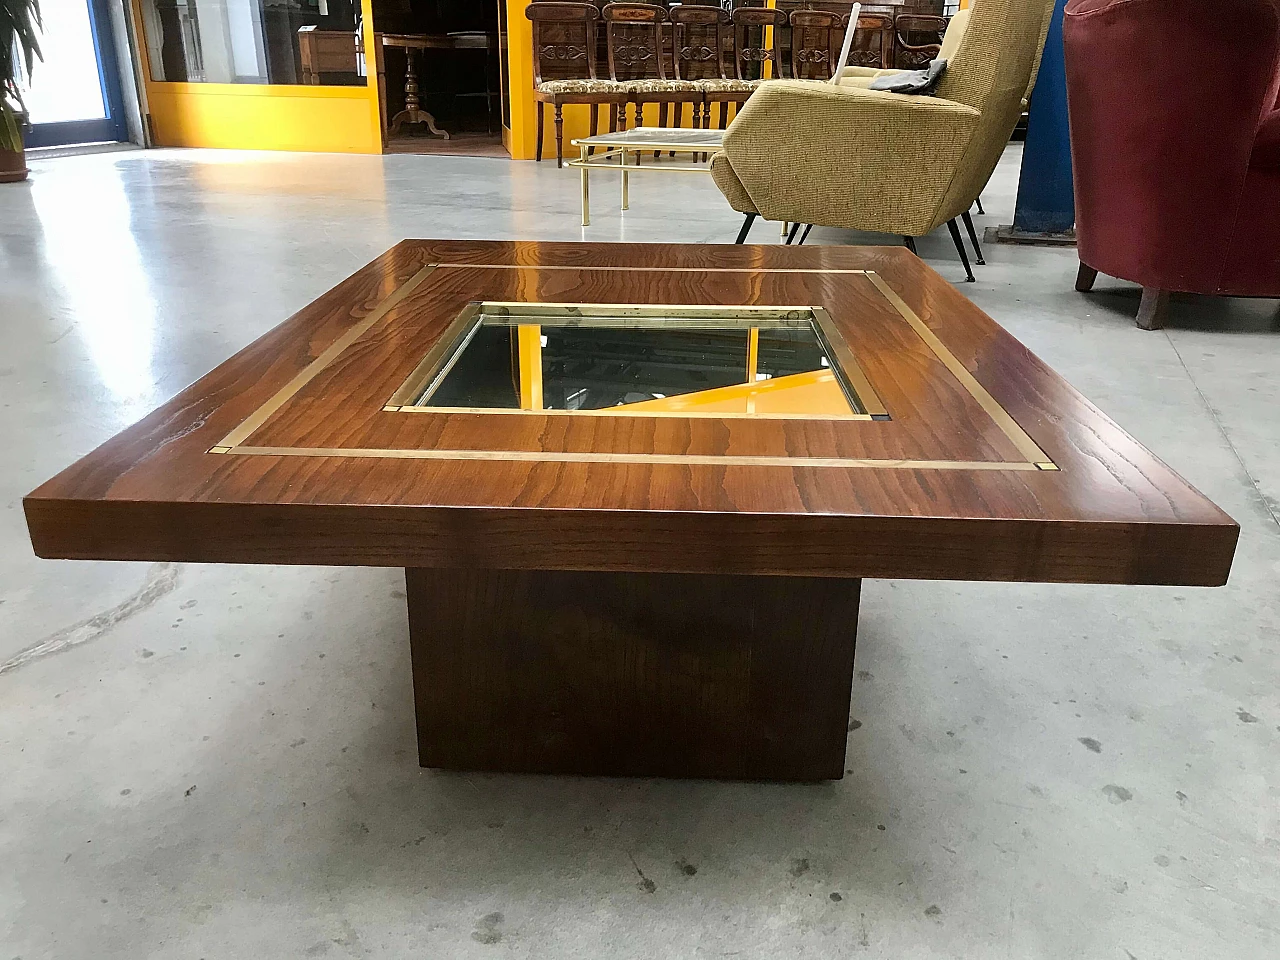 Tavolino da Caffè tipo Willy Rizzo in legno di rovere con specchio e profili di ottone, originale anni '60/'70 1226025